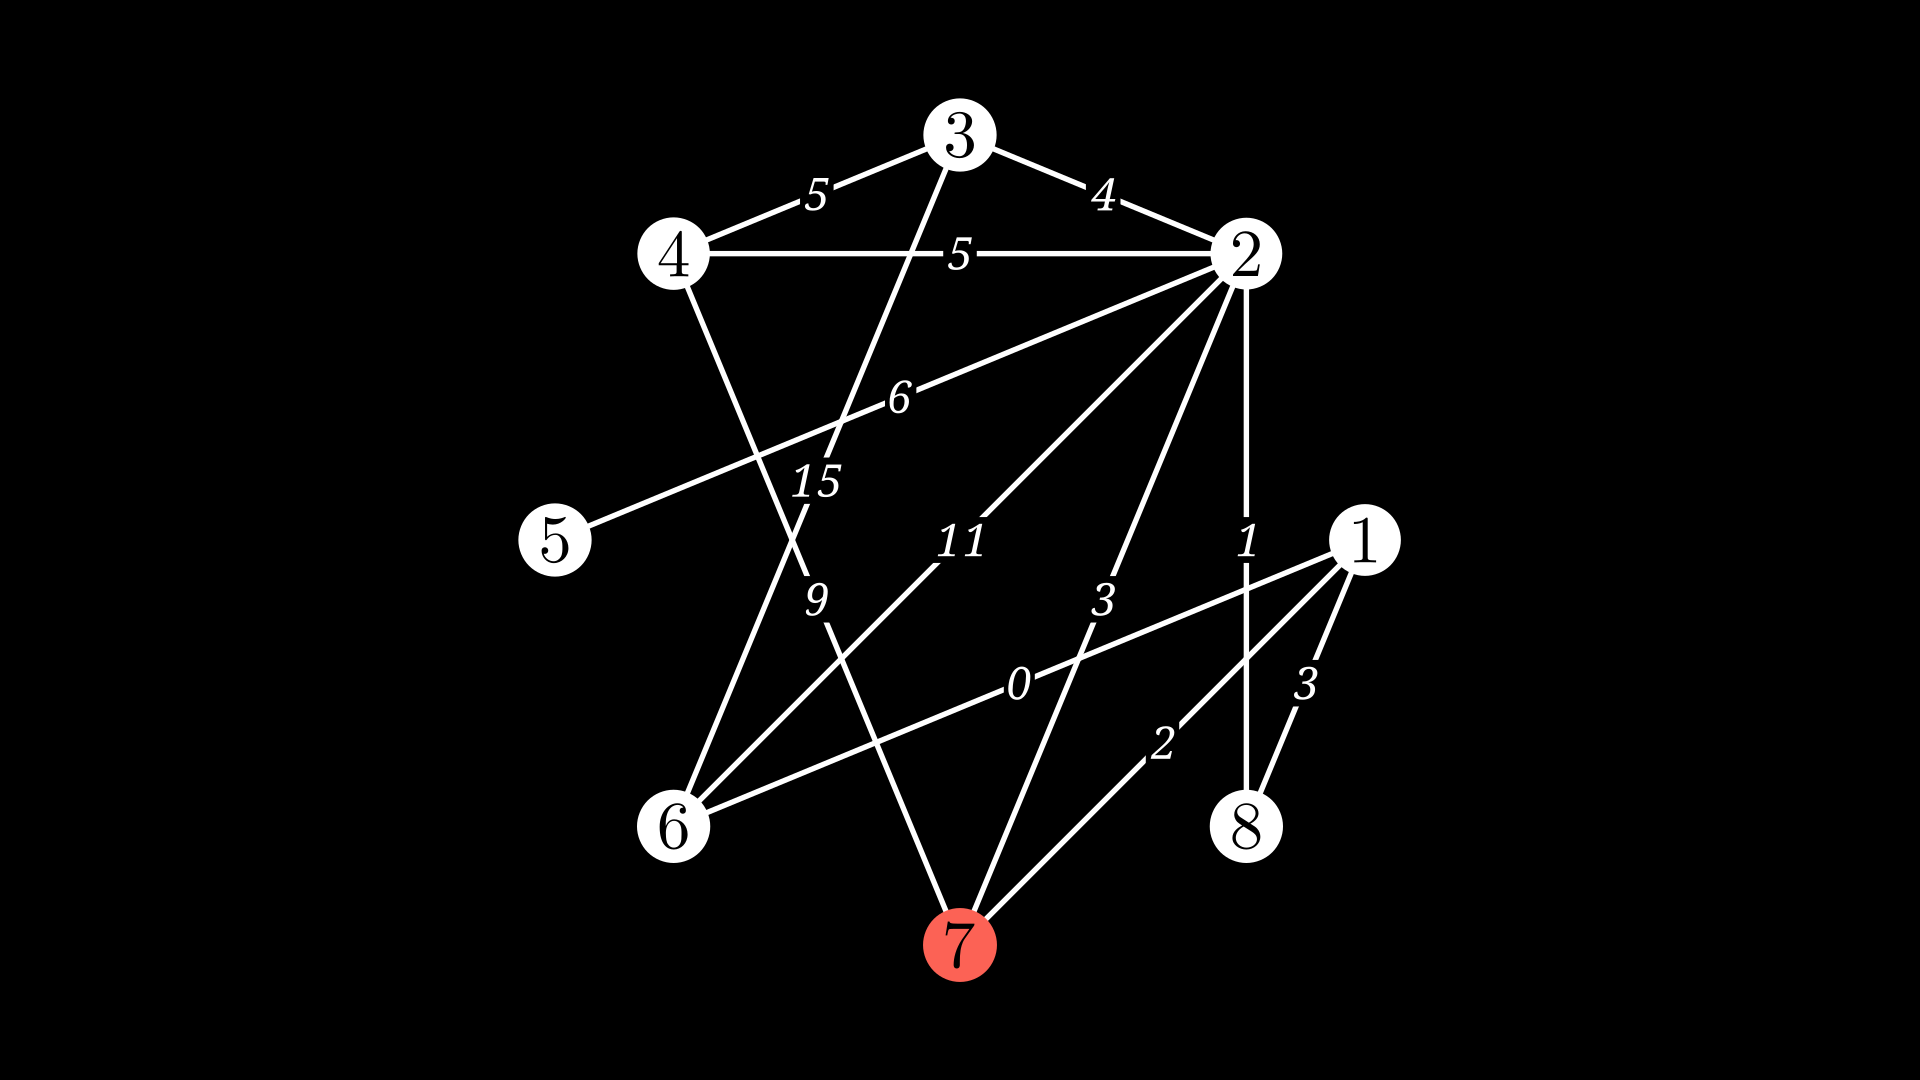 NetworkX Graph